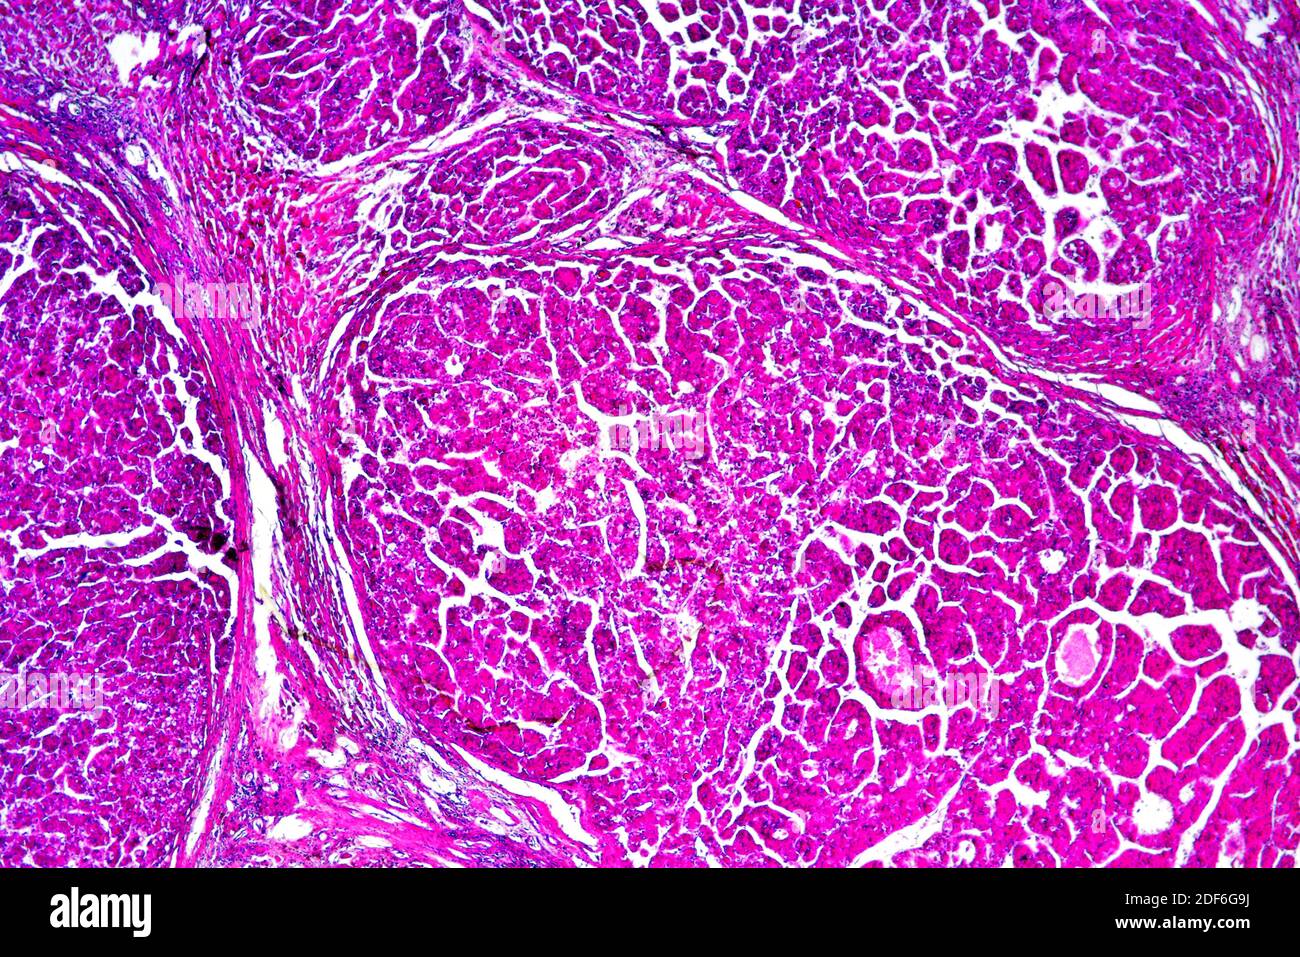 Hígado humano con carcinoma metastásico. Microscopio óptico X40. Foto de stock